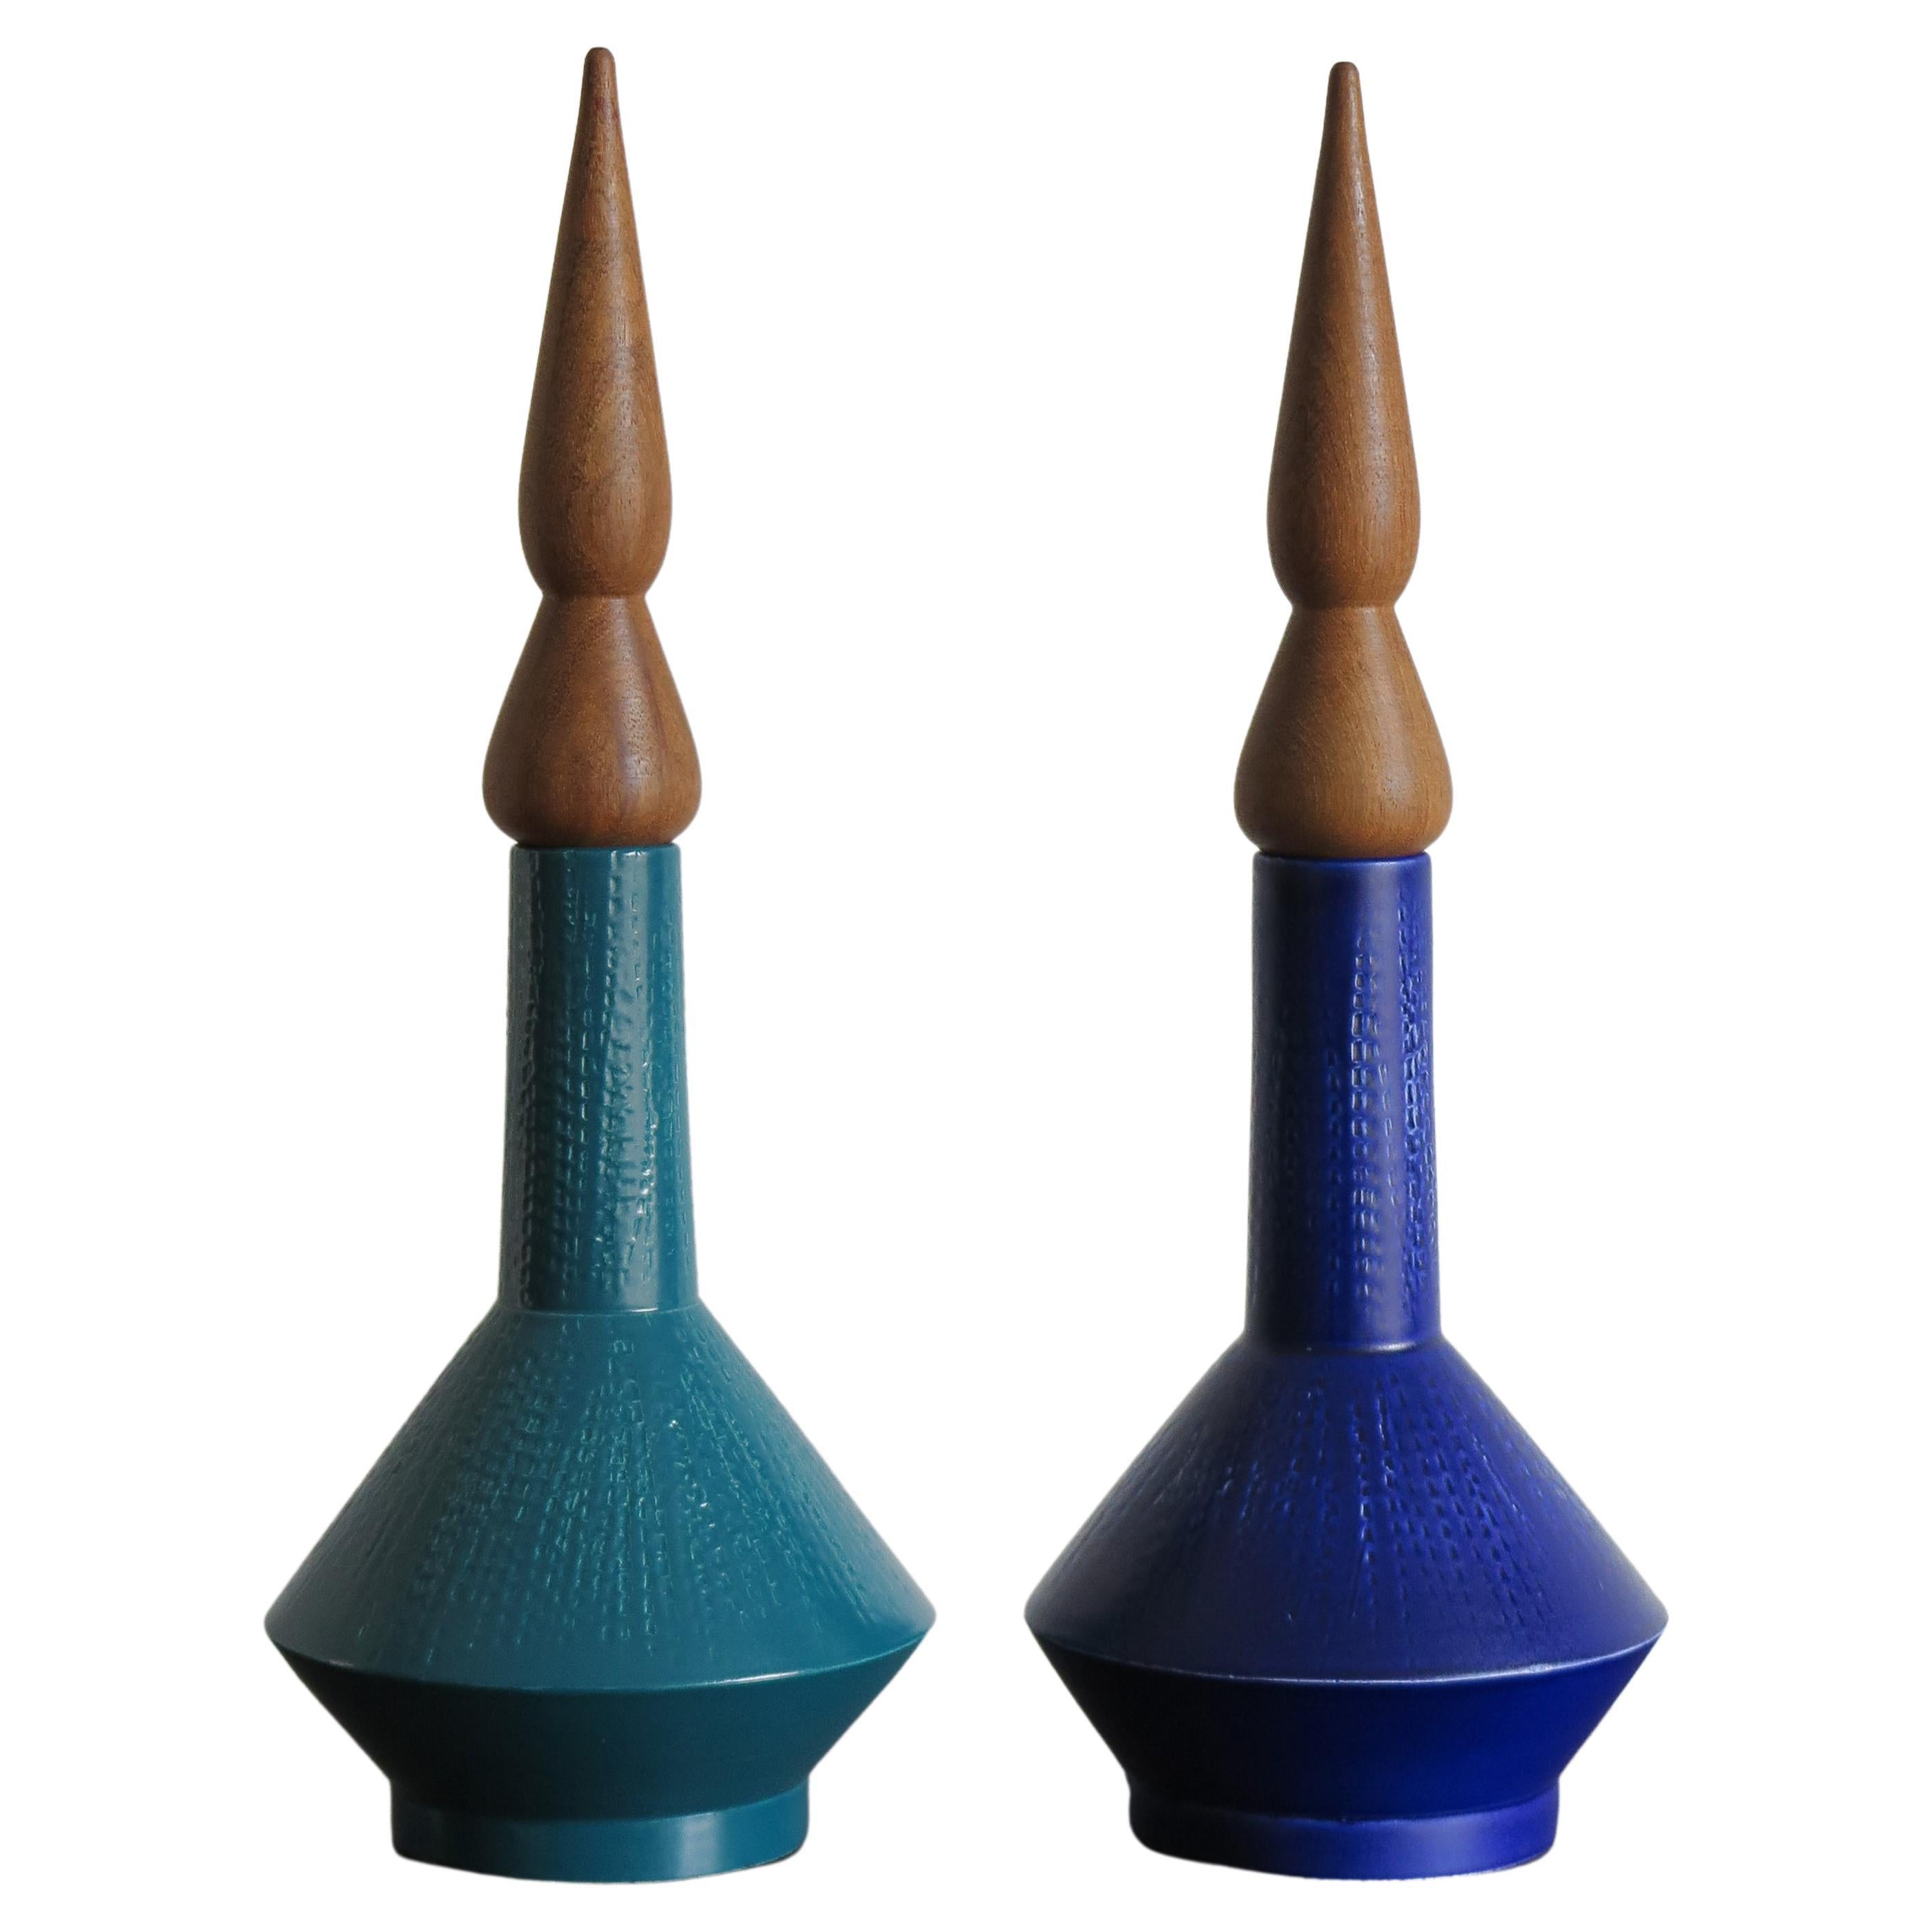 Vases contemporains en céramique bleue et verte conçus par Capperidicasa, fabriqués en Italie